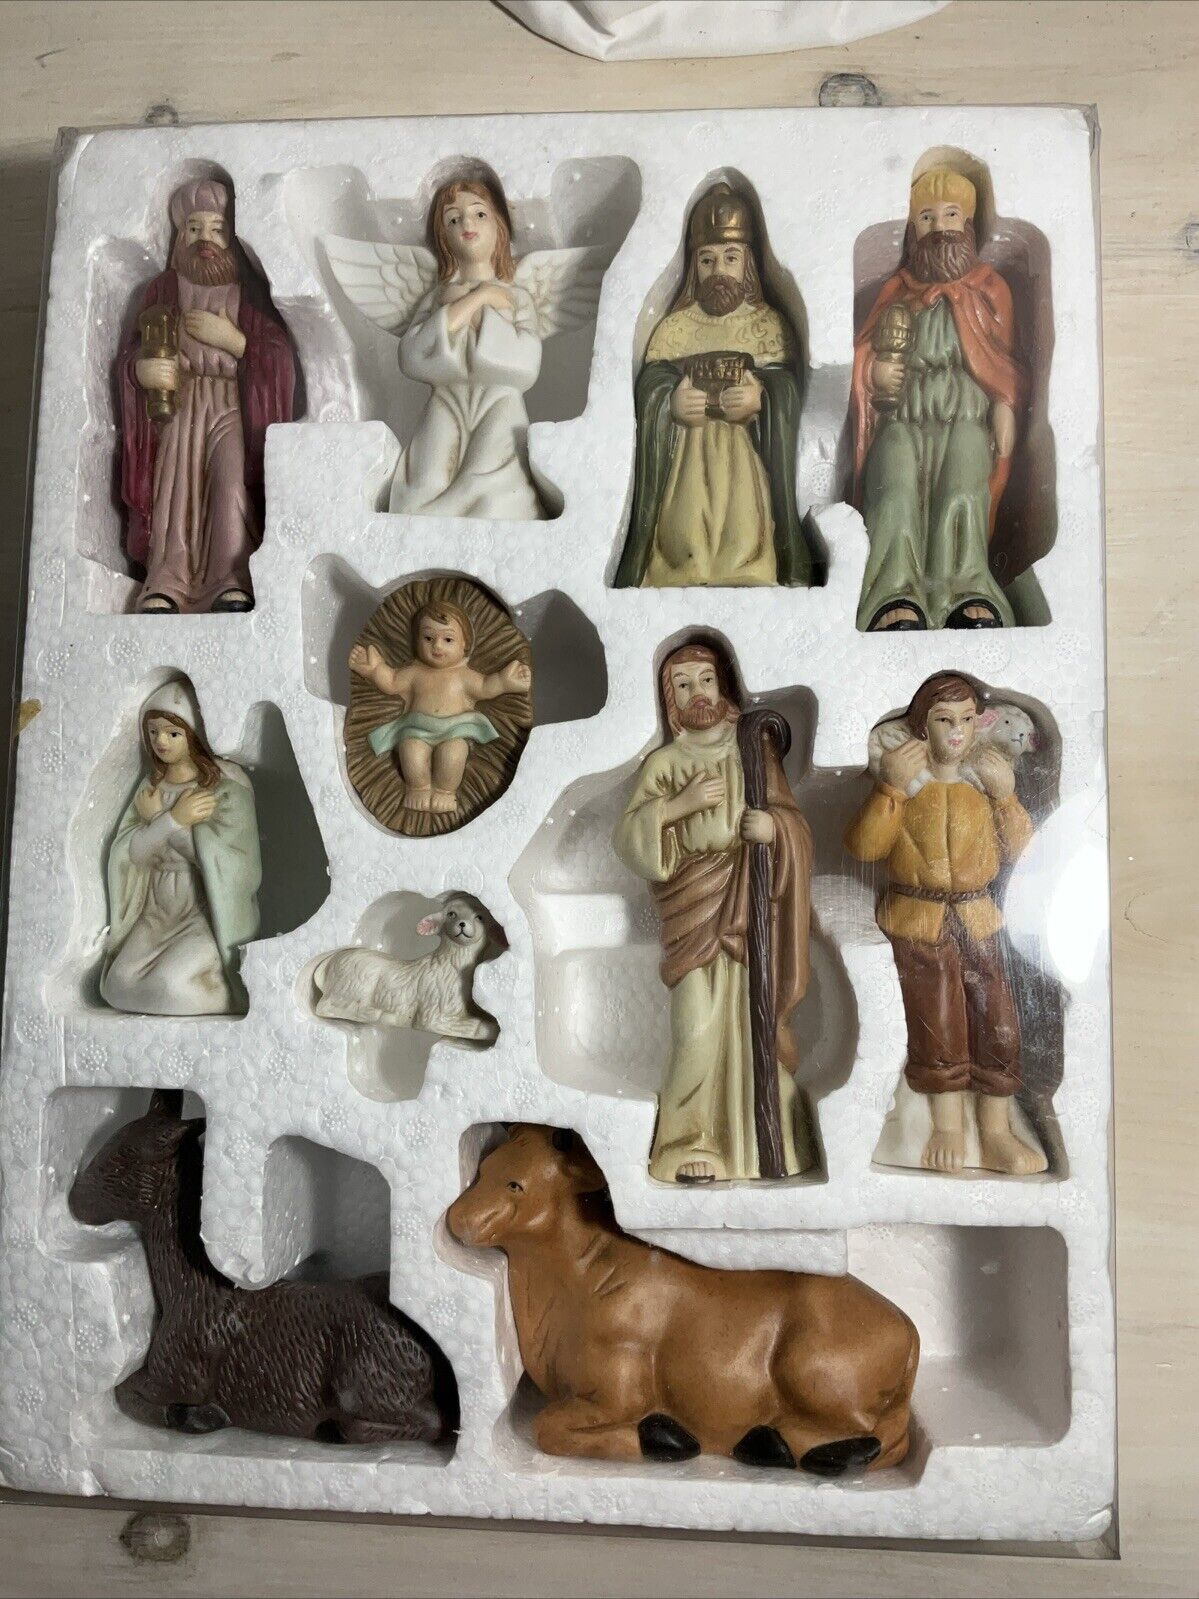 11 Piece Ceramic Nativity Scene Figures